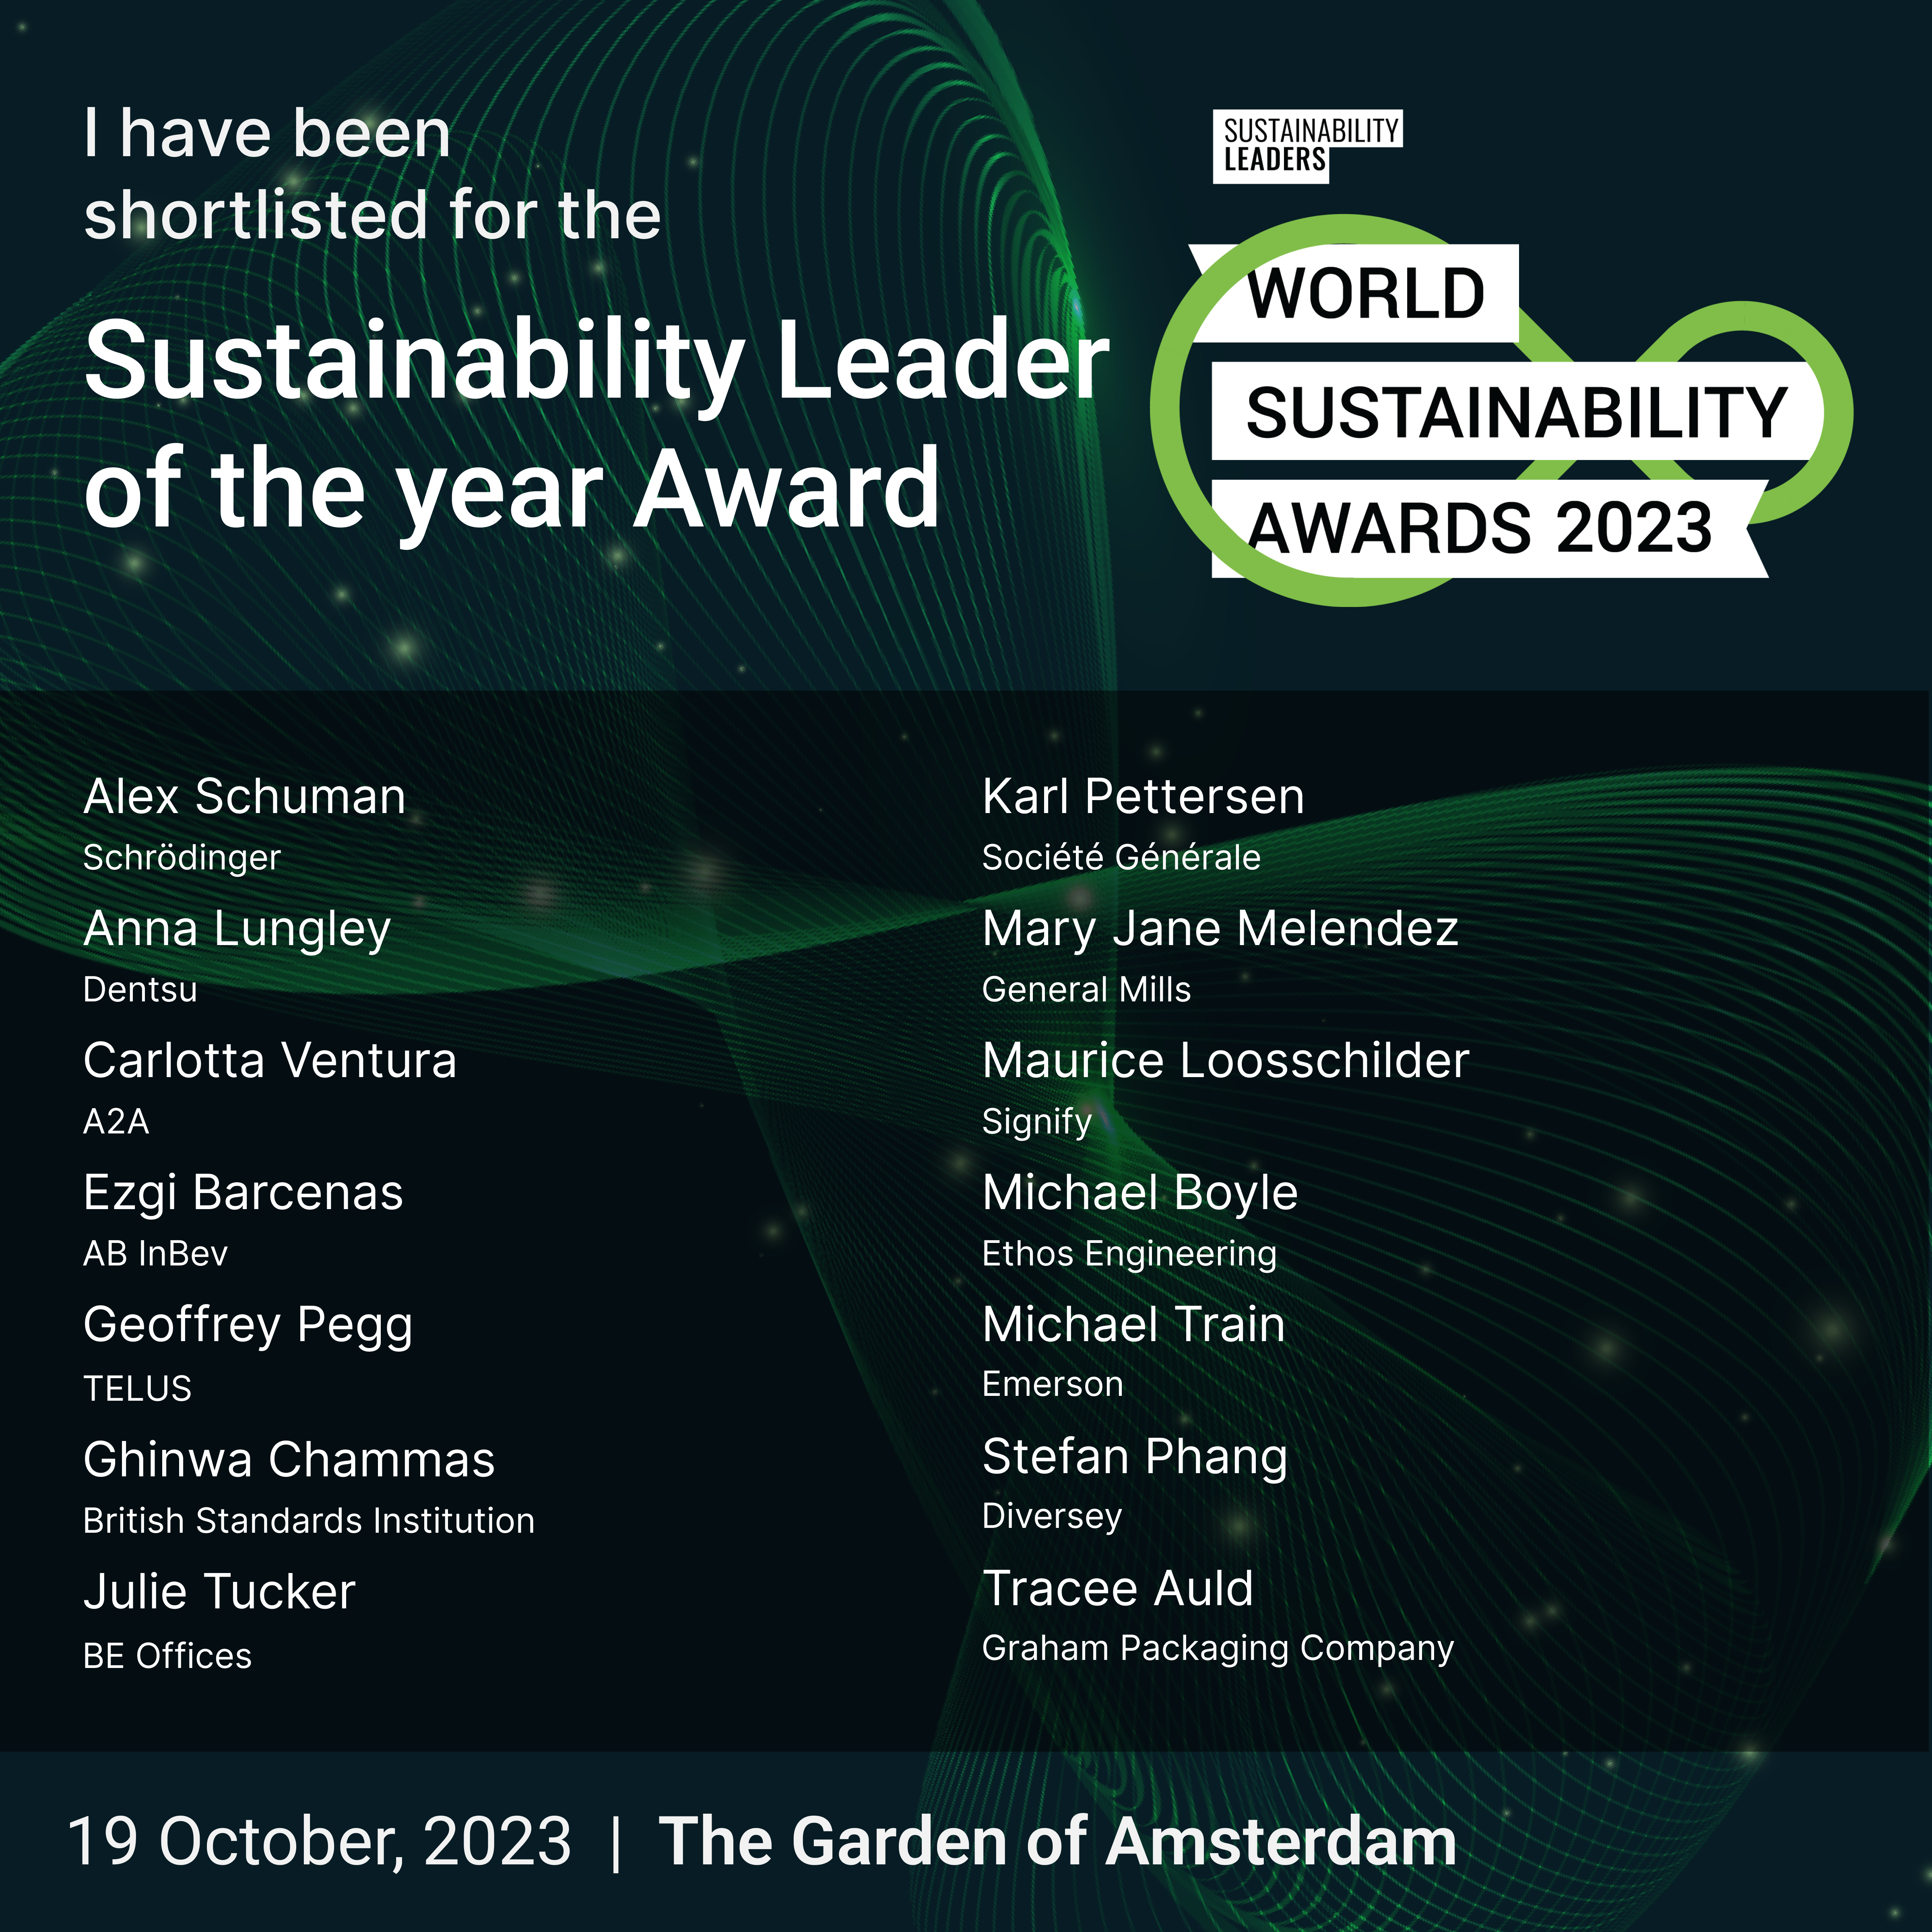 World Sustainability Awards 2023